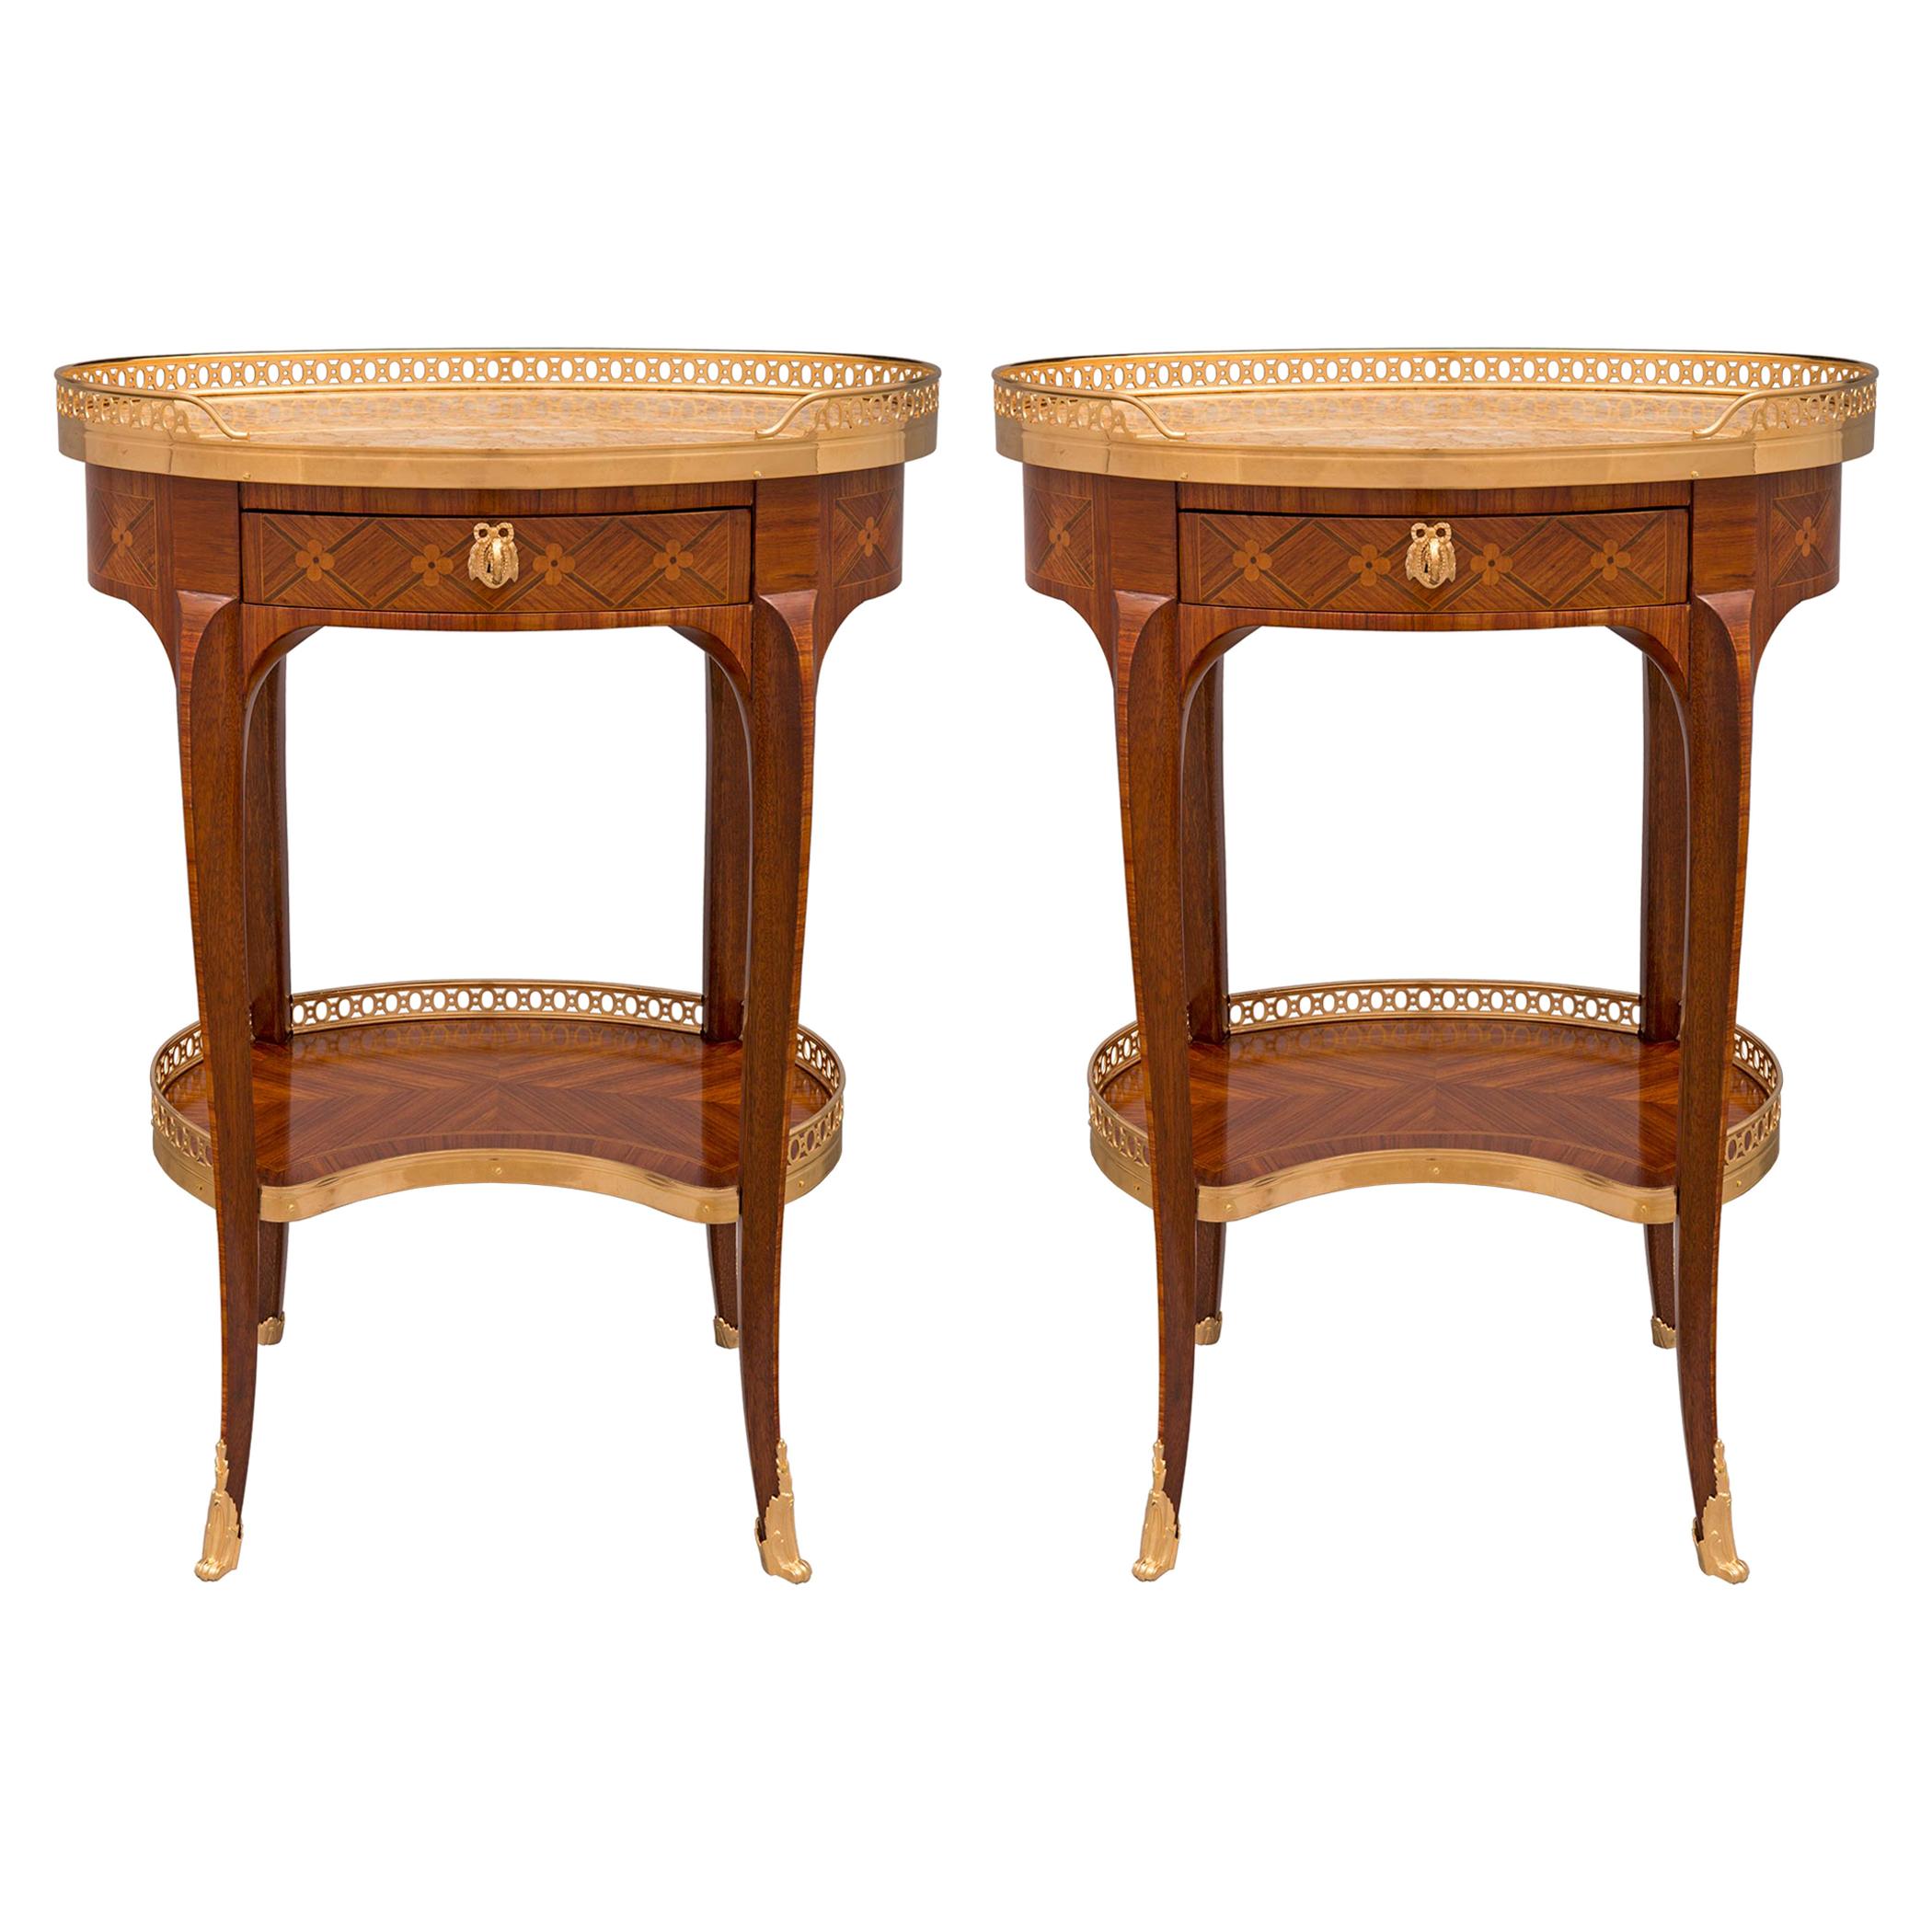 Paire de tables d'appoint françaises de style Louis XV du 19ème siècle